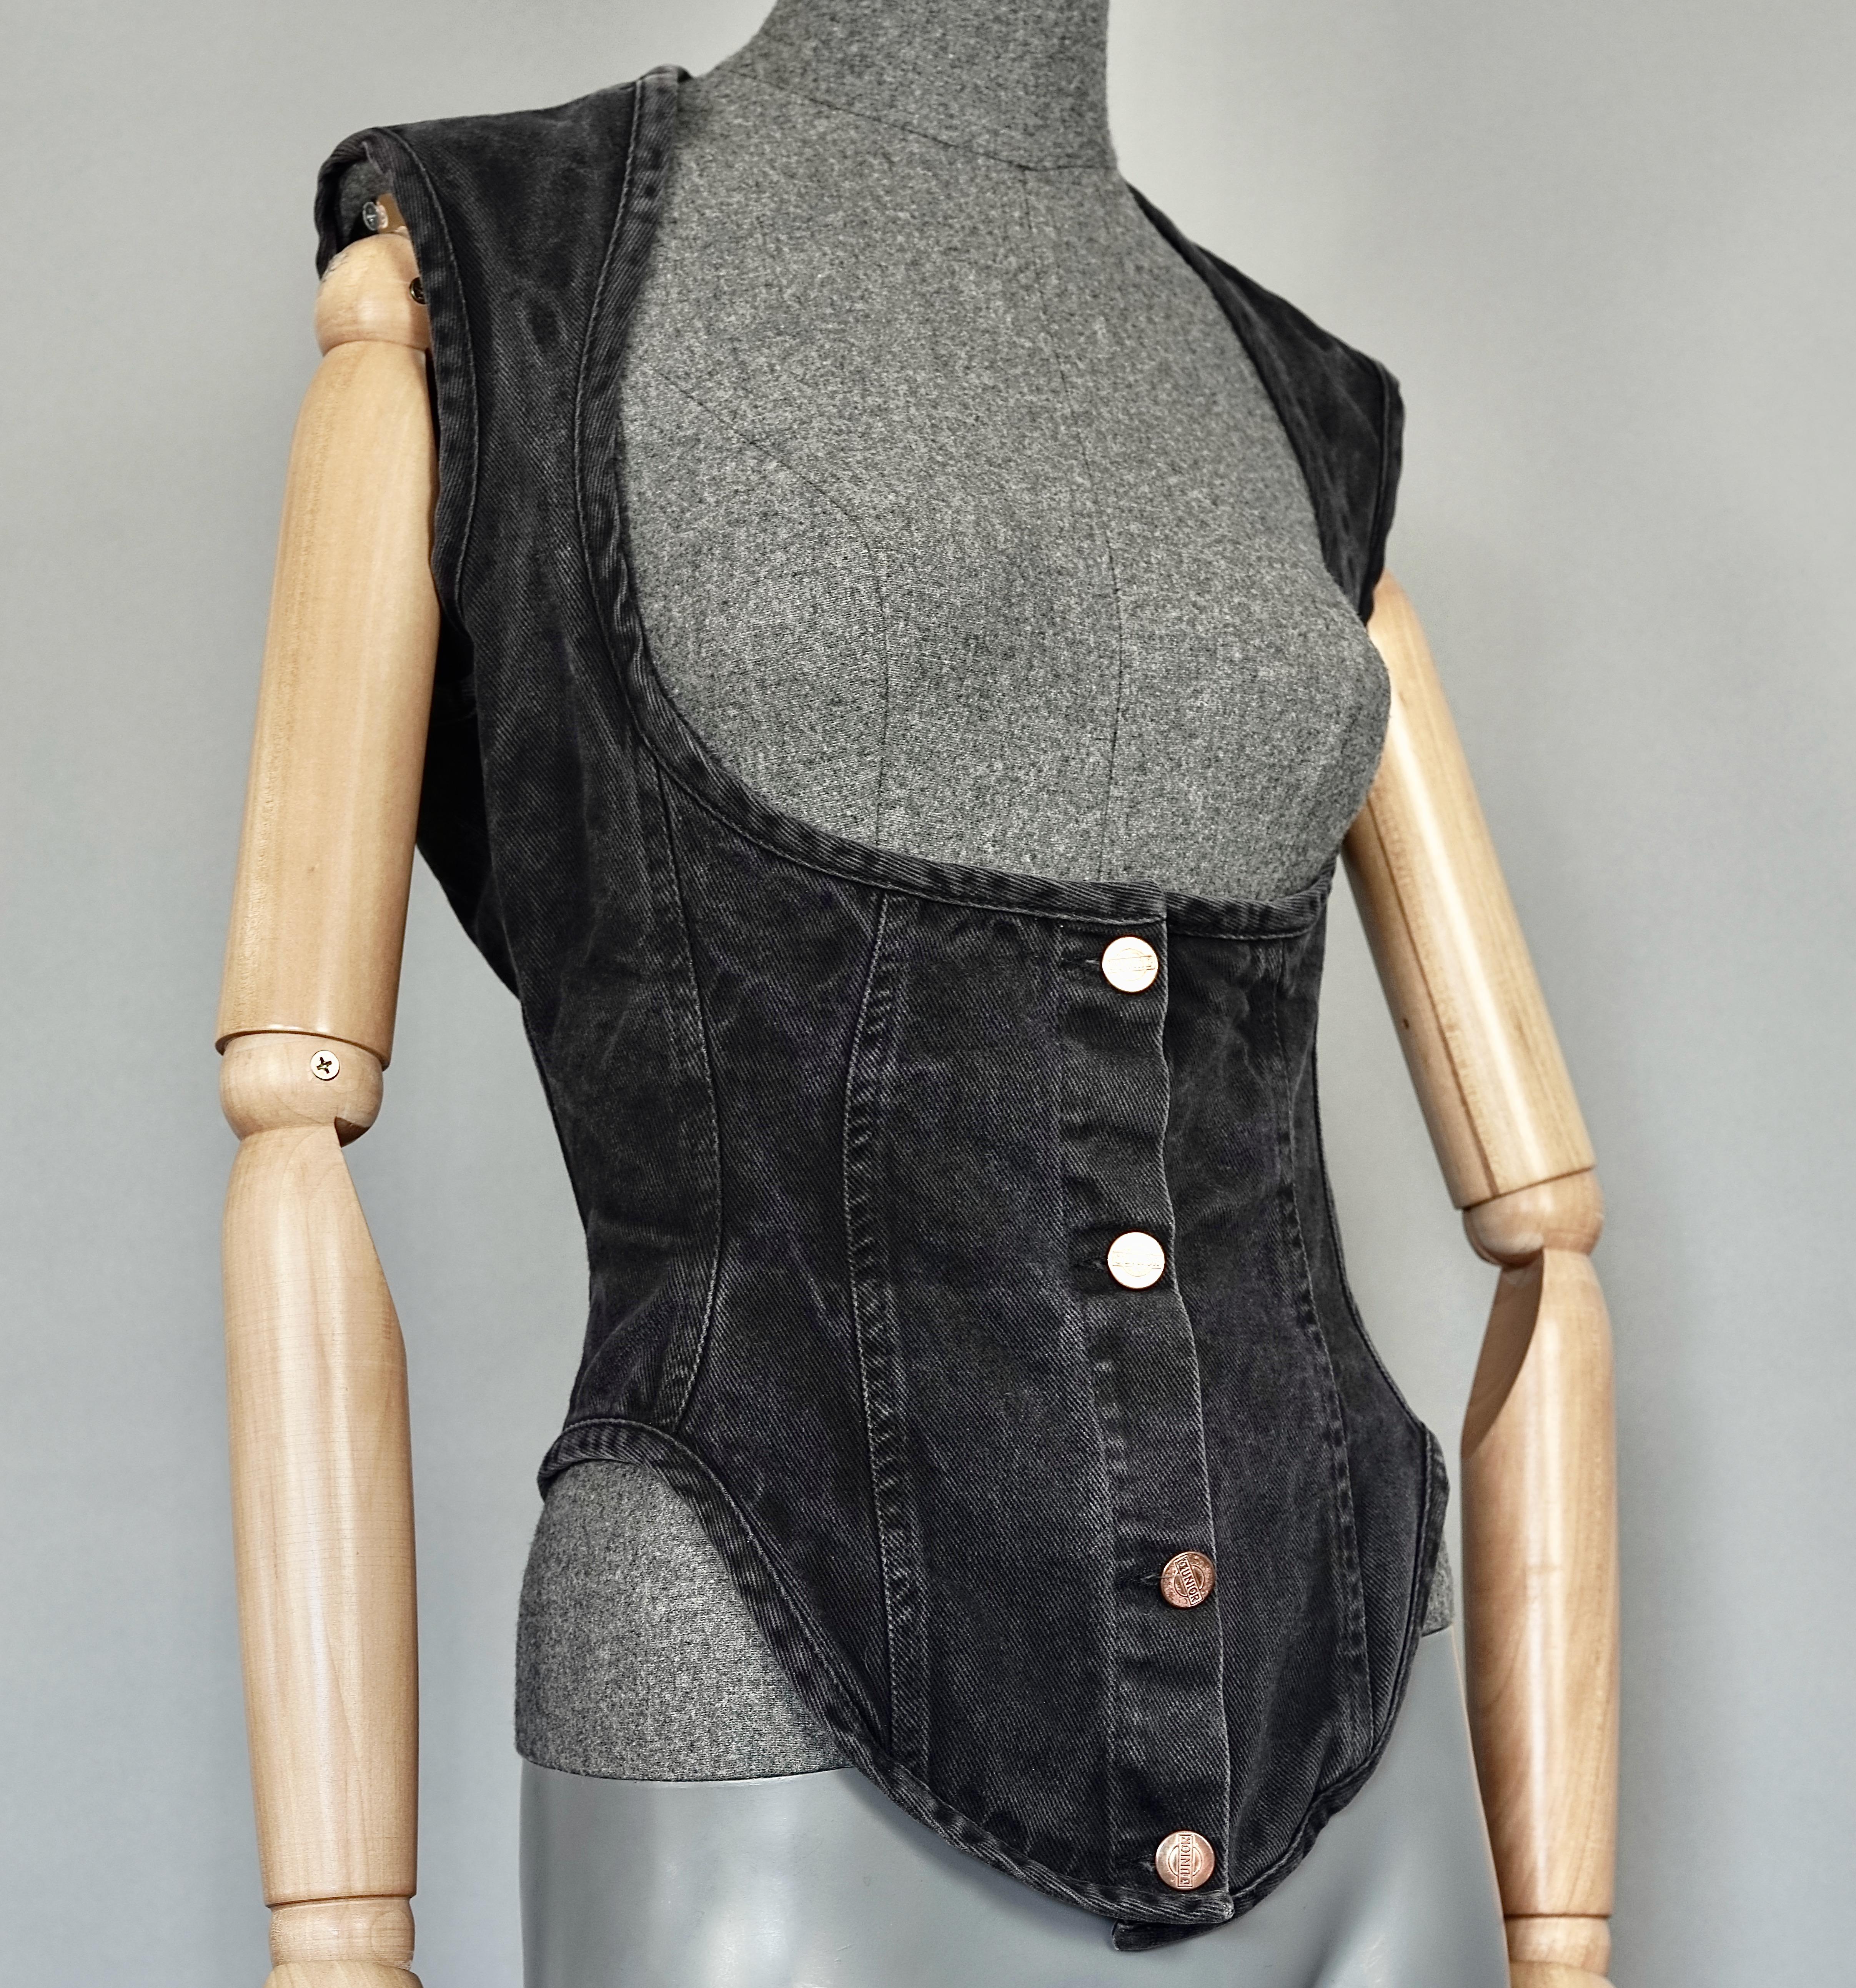 Vintage JEAN PAUL GAULTIER  Denim Corset Vest Top

Measurements taken laid flat, please double bust and waist:
Shoulder: 14.96 inches (38 cm)
Bust: 16.33 inches (41.5 cm)
Waist: 13.58 inches (34.5 cm)
Length: 24 inches (61 cm)

Features:
- 100%